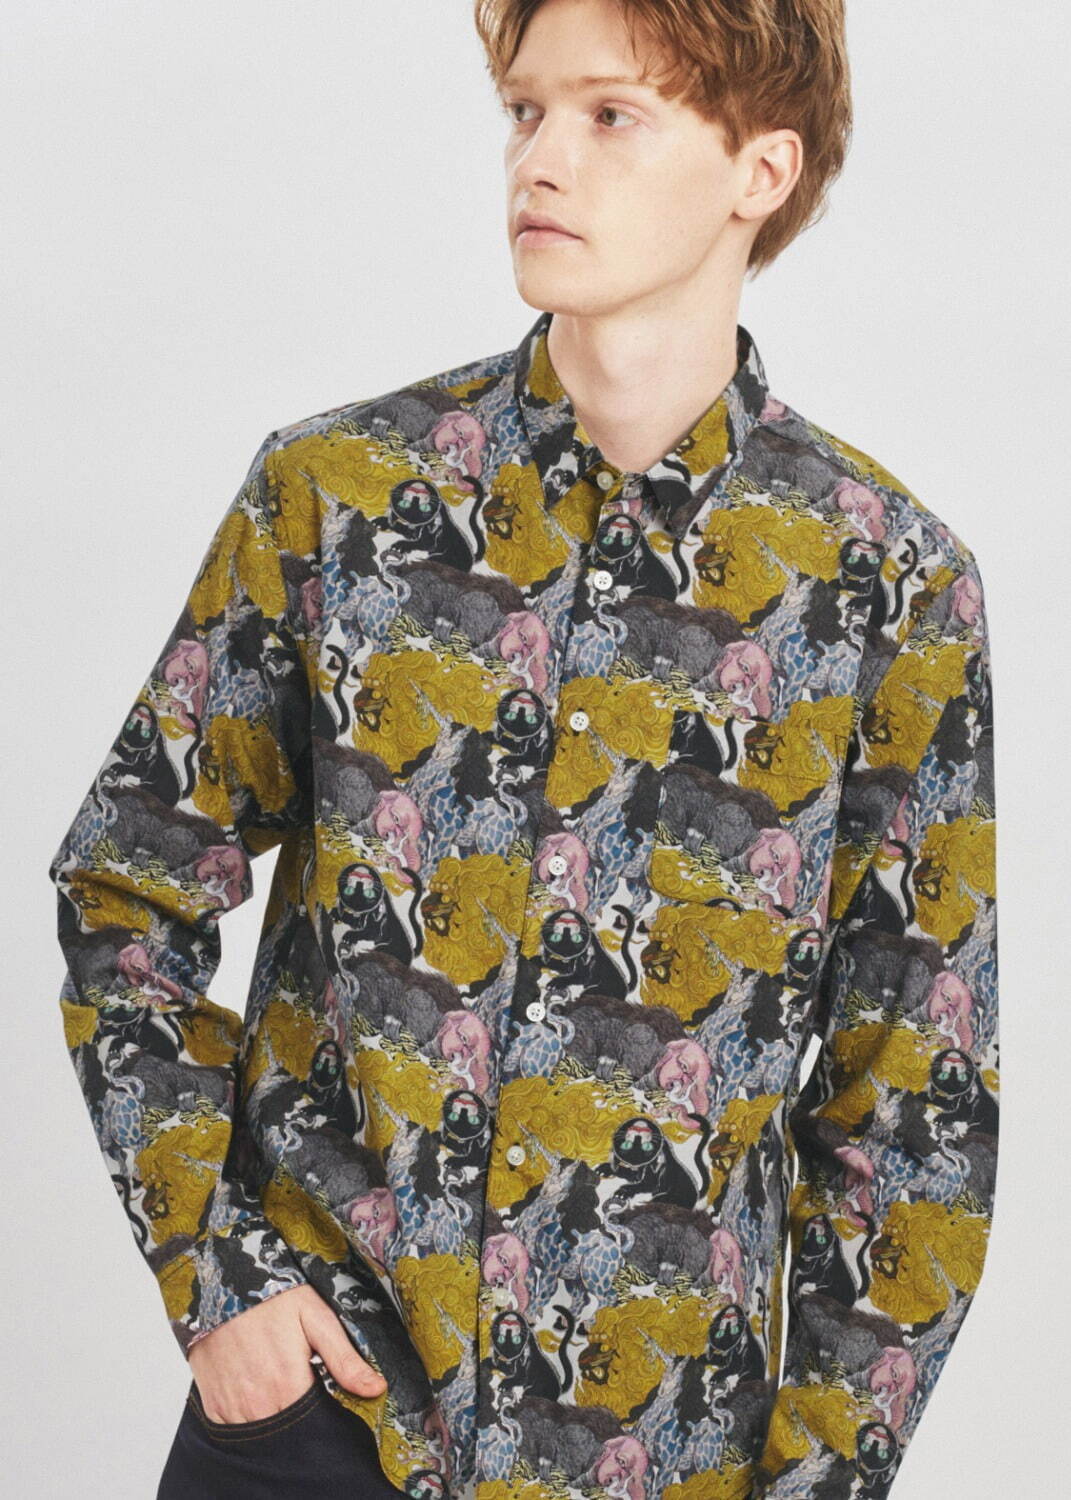 長袖シャツ「化け猫と幻獣 パターン」6,900円